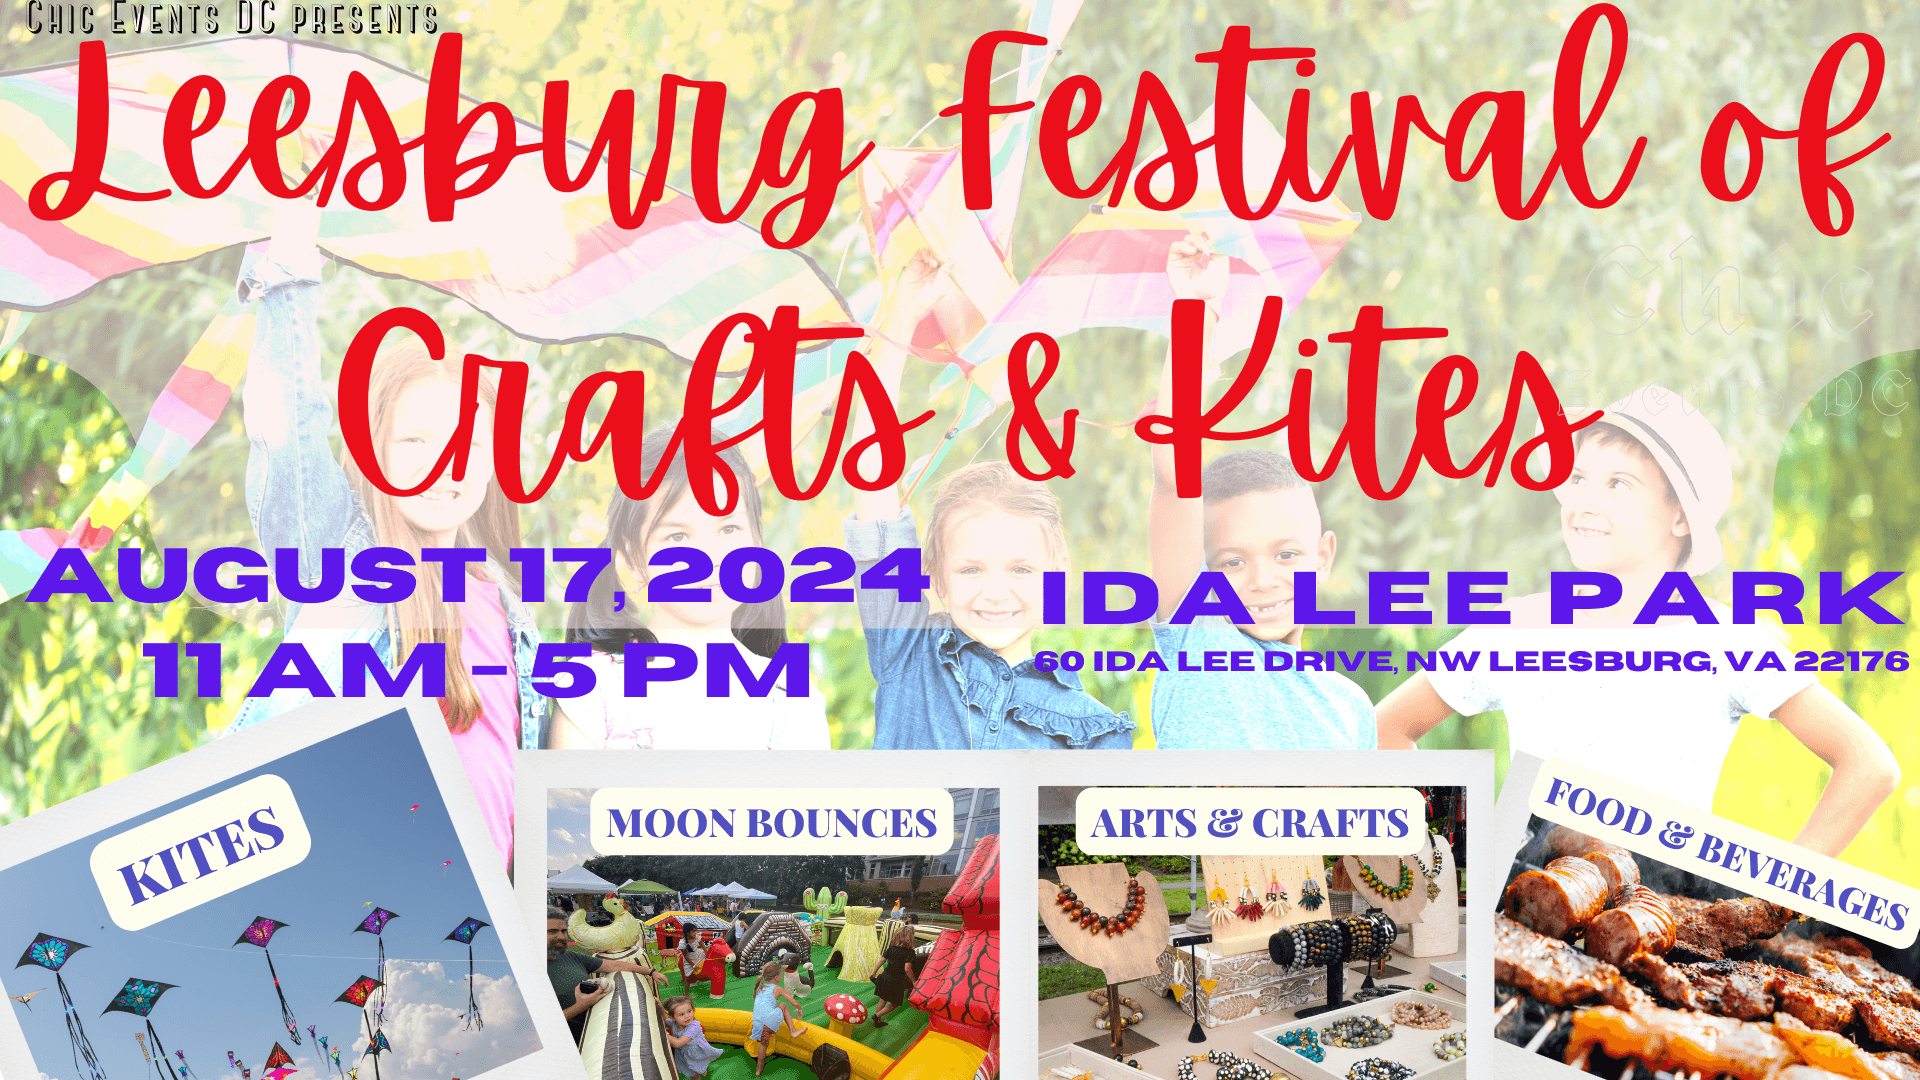 Leesburg Festival of Crafts & Kites @ Ida Lee Park, Leesburg, Virginia, United States